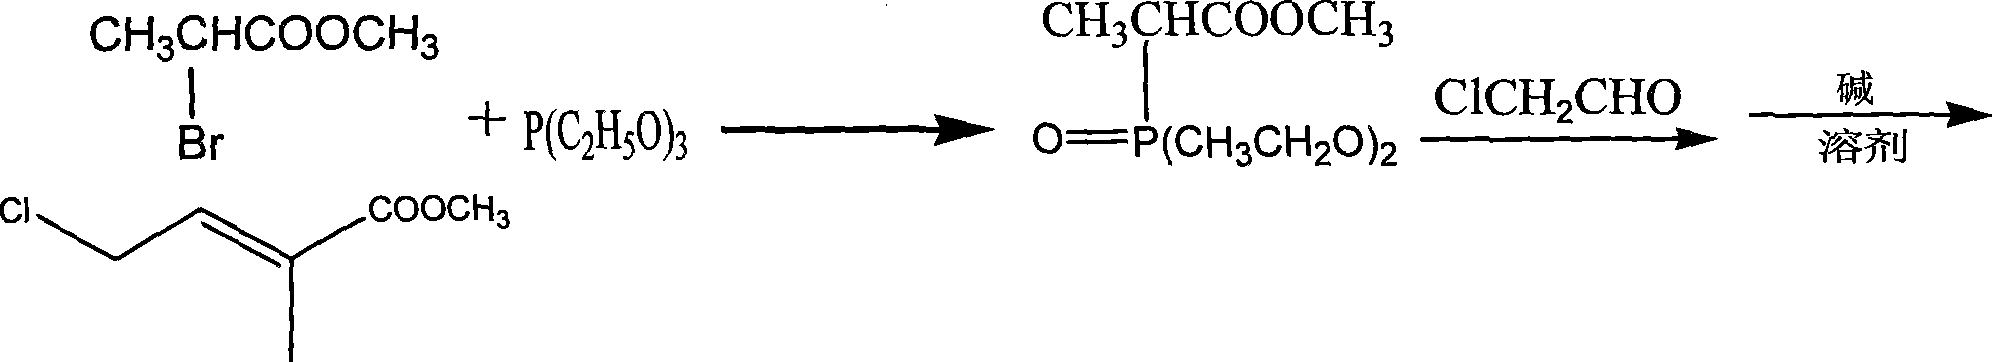 Method for synthesizing saffron acid